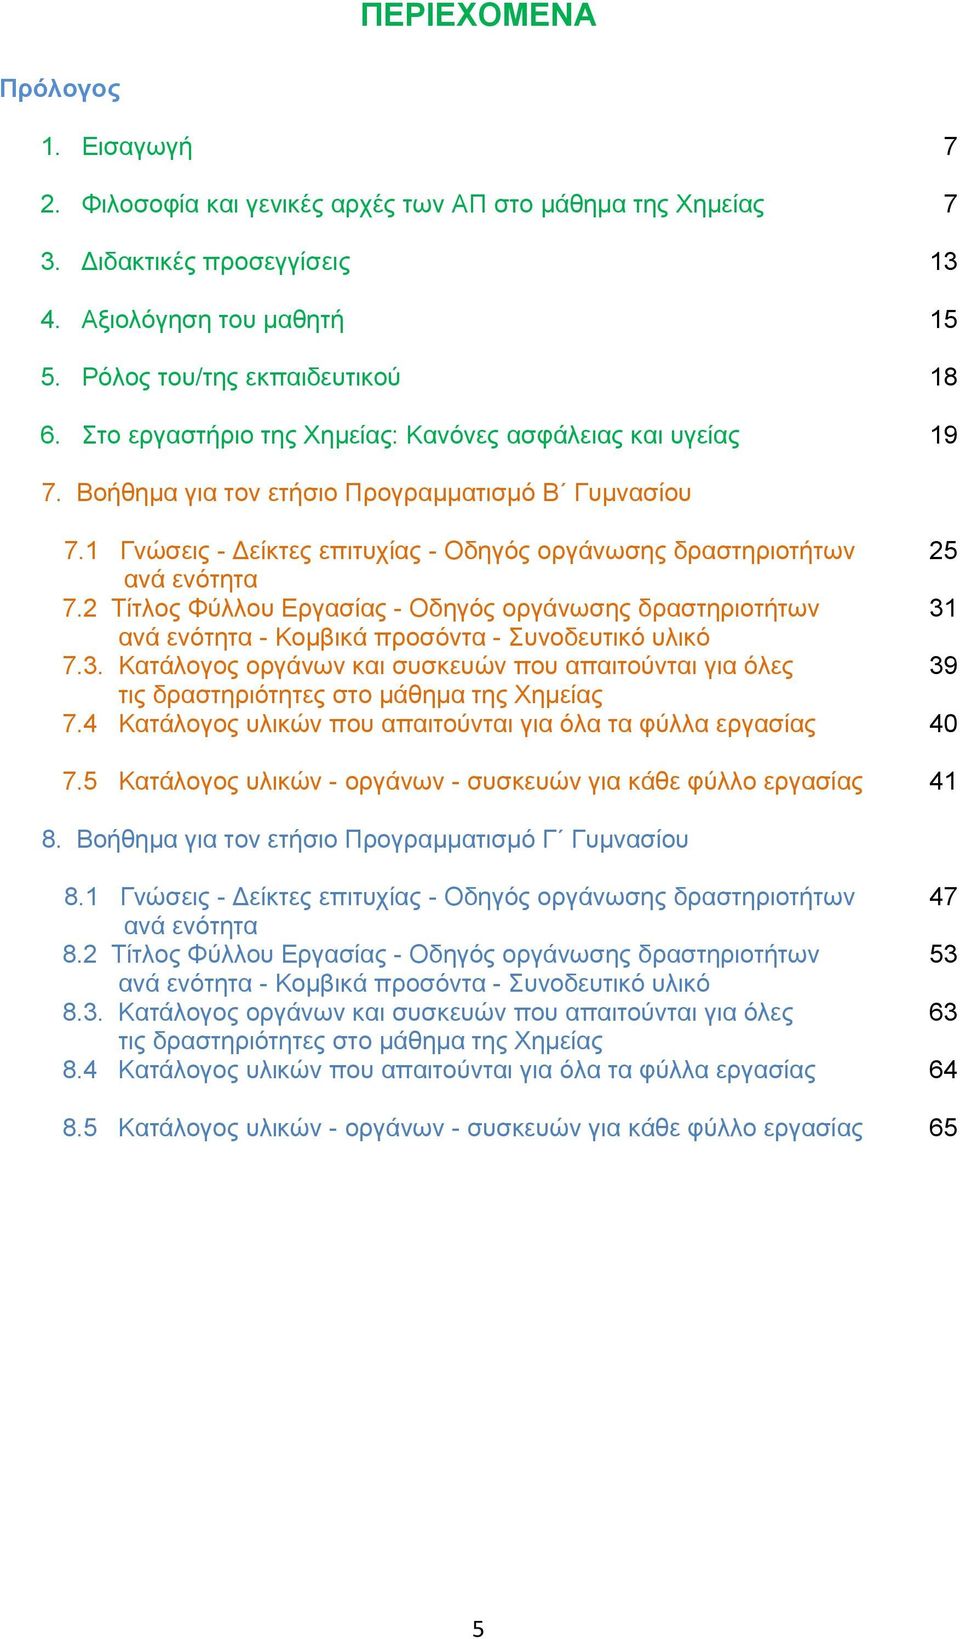 2 Τίτλος Φύλλου Εργασίας - Οδηγός οργάνωσης δραστηριοτήτων 31 ανά ενότητα - Κομβικά προσόντα - Συνοδευτικό υλικό 7.3. Κατάλογος οργάνων και συσκευών που απαιτούνται για όλες 39 τις δραστηριότητες στο μάθημα της Χημείας 7.